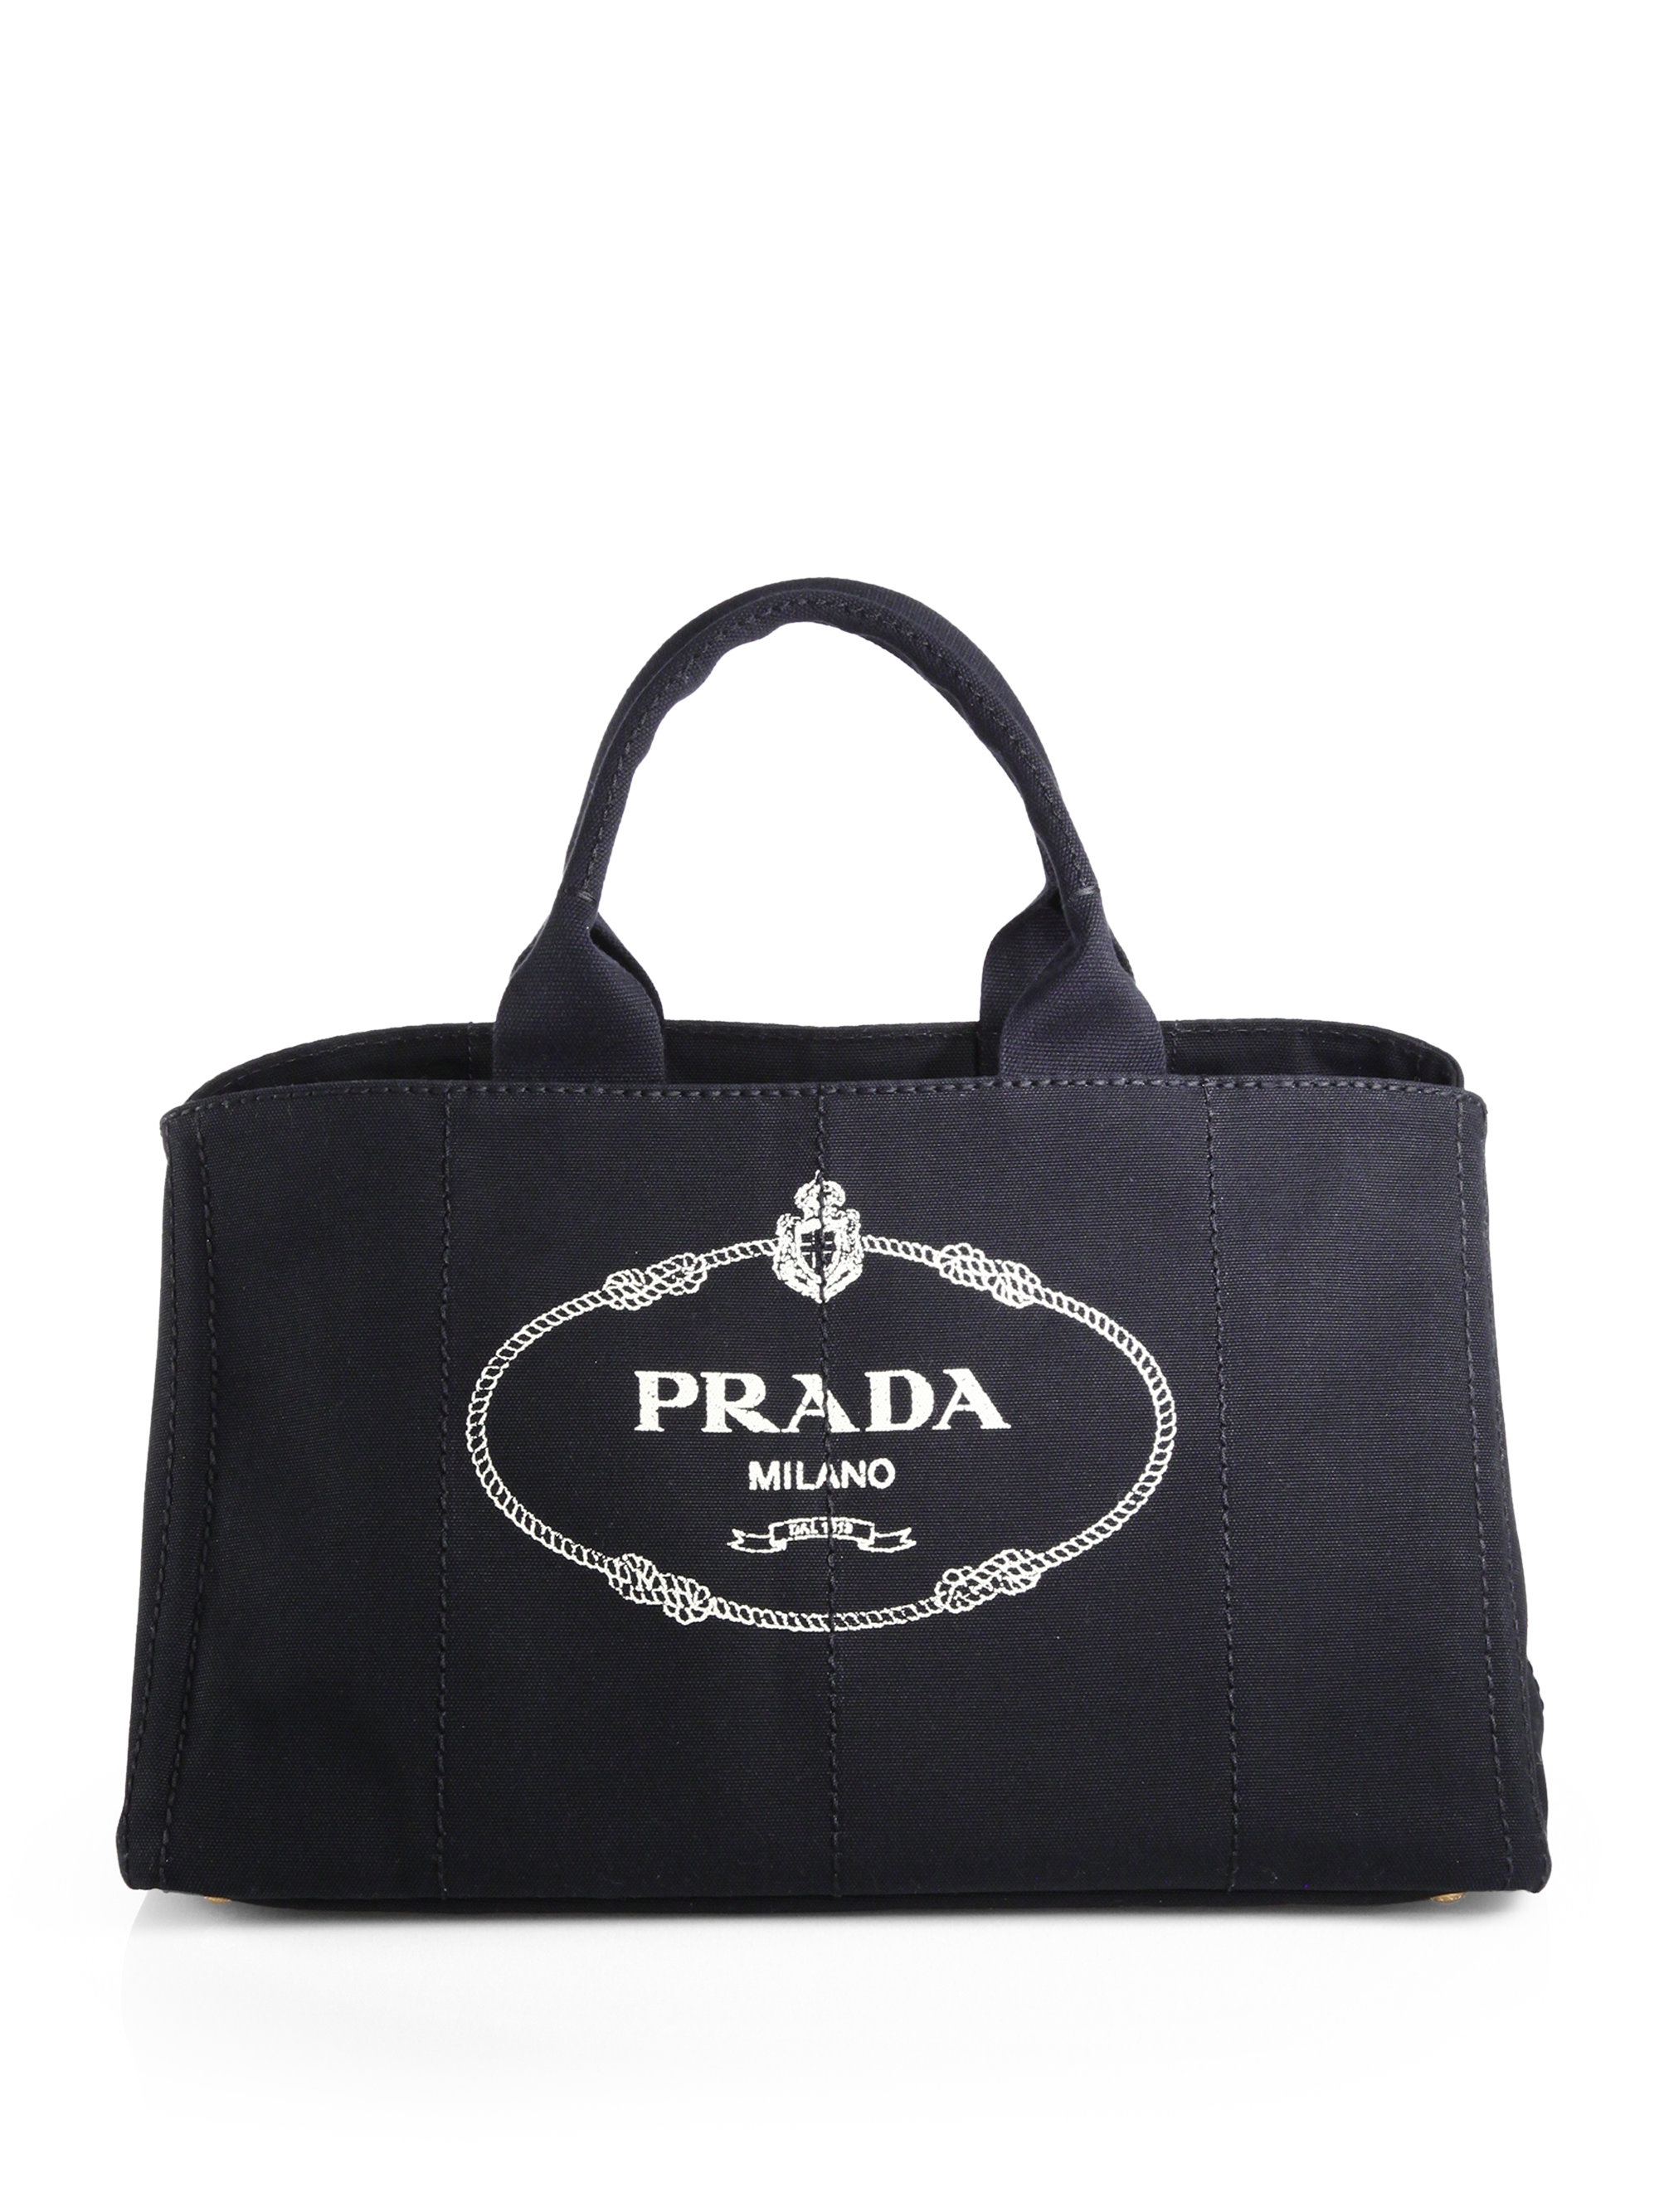 Prada Logo Tote Bag | IUCN Water